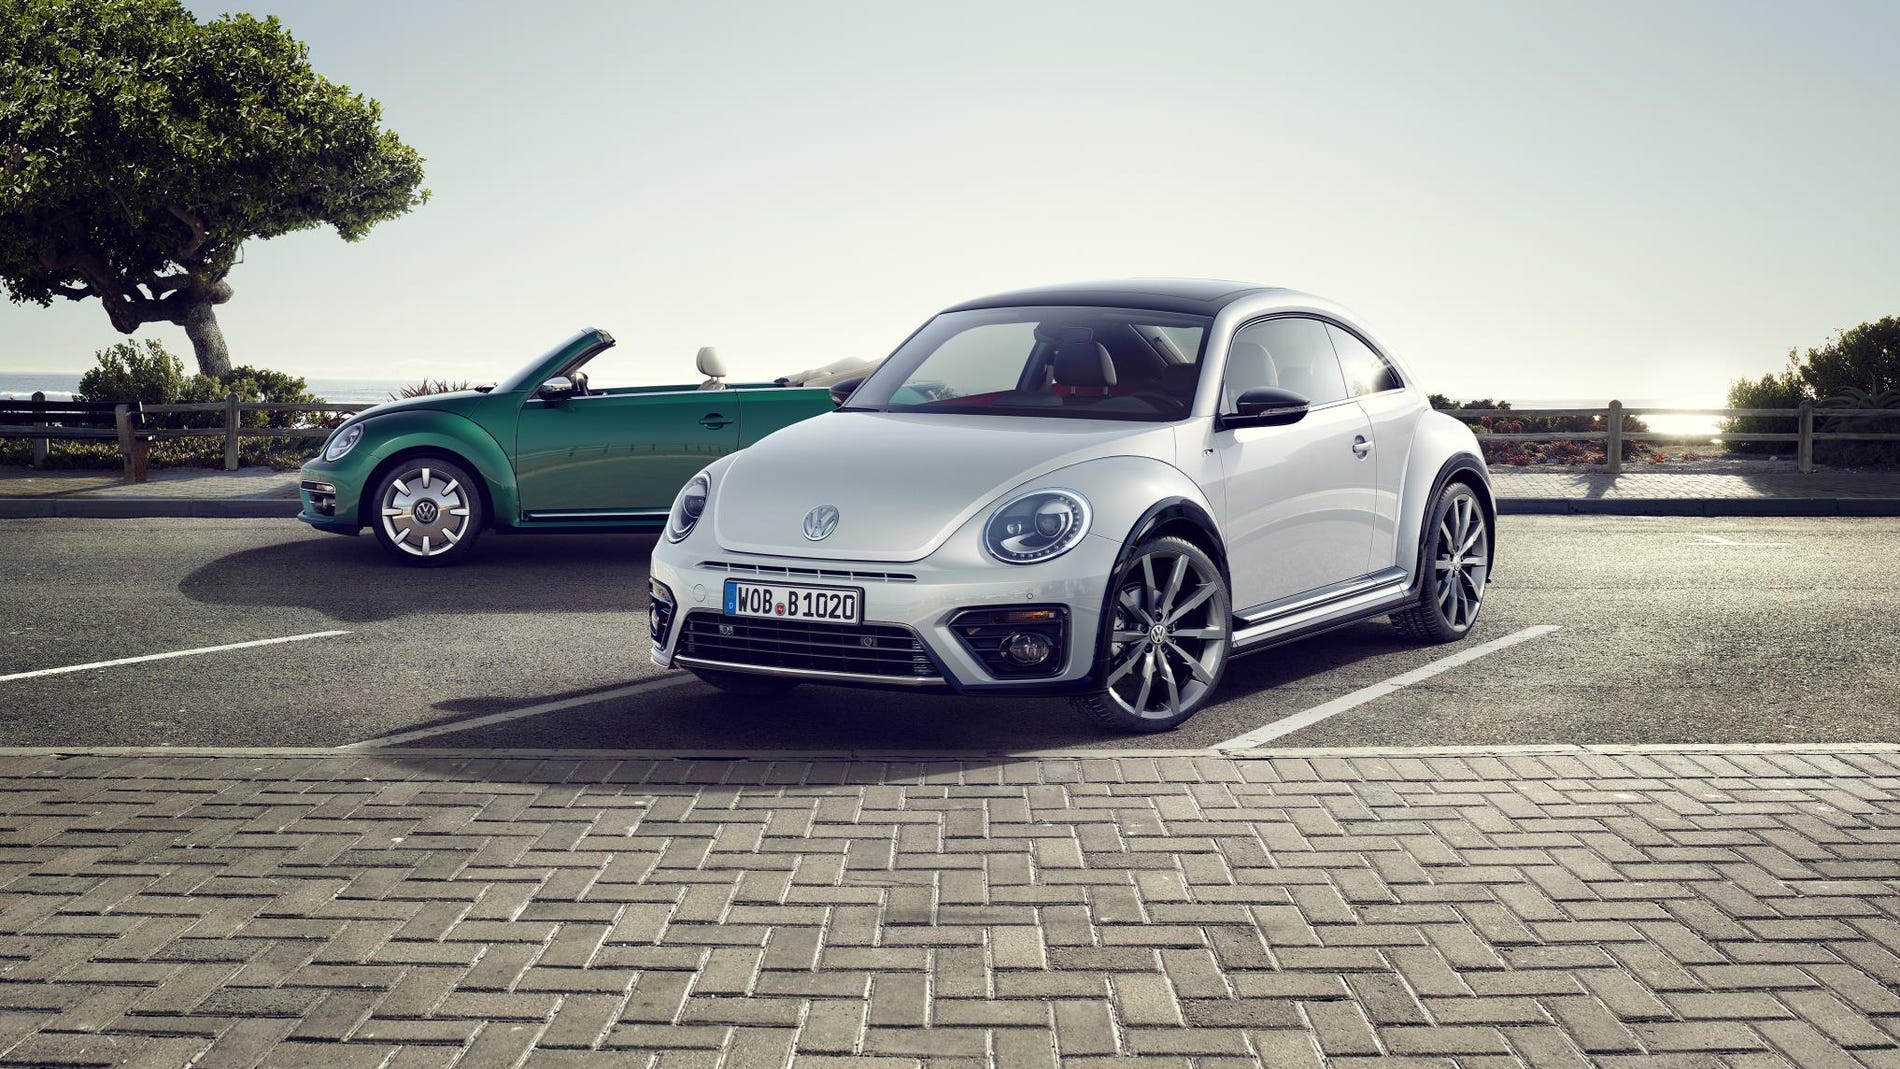  Volkswagen decide dar descanso al Beetle